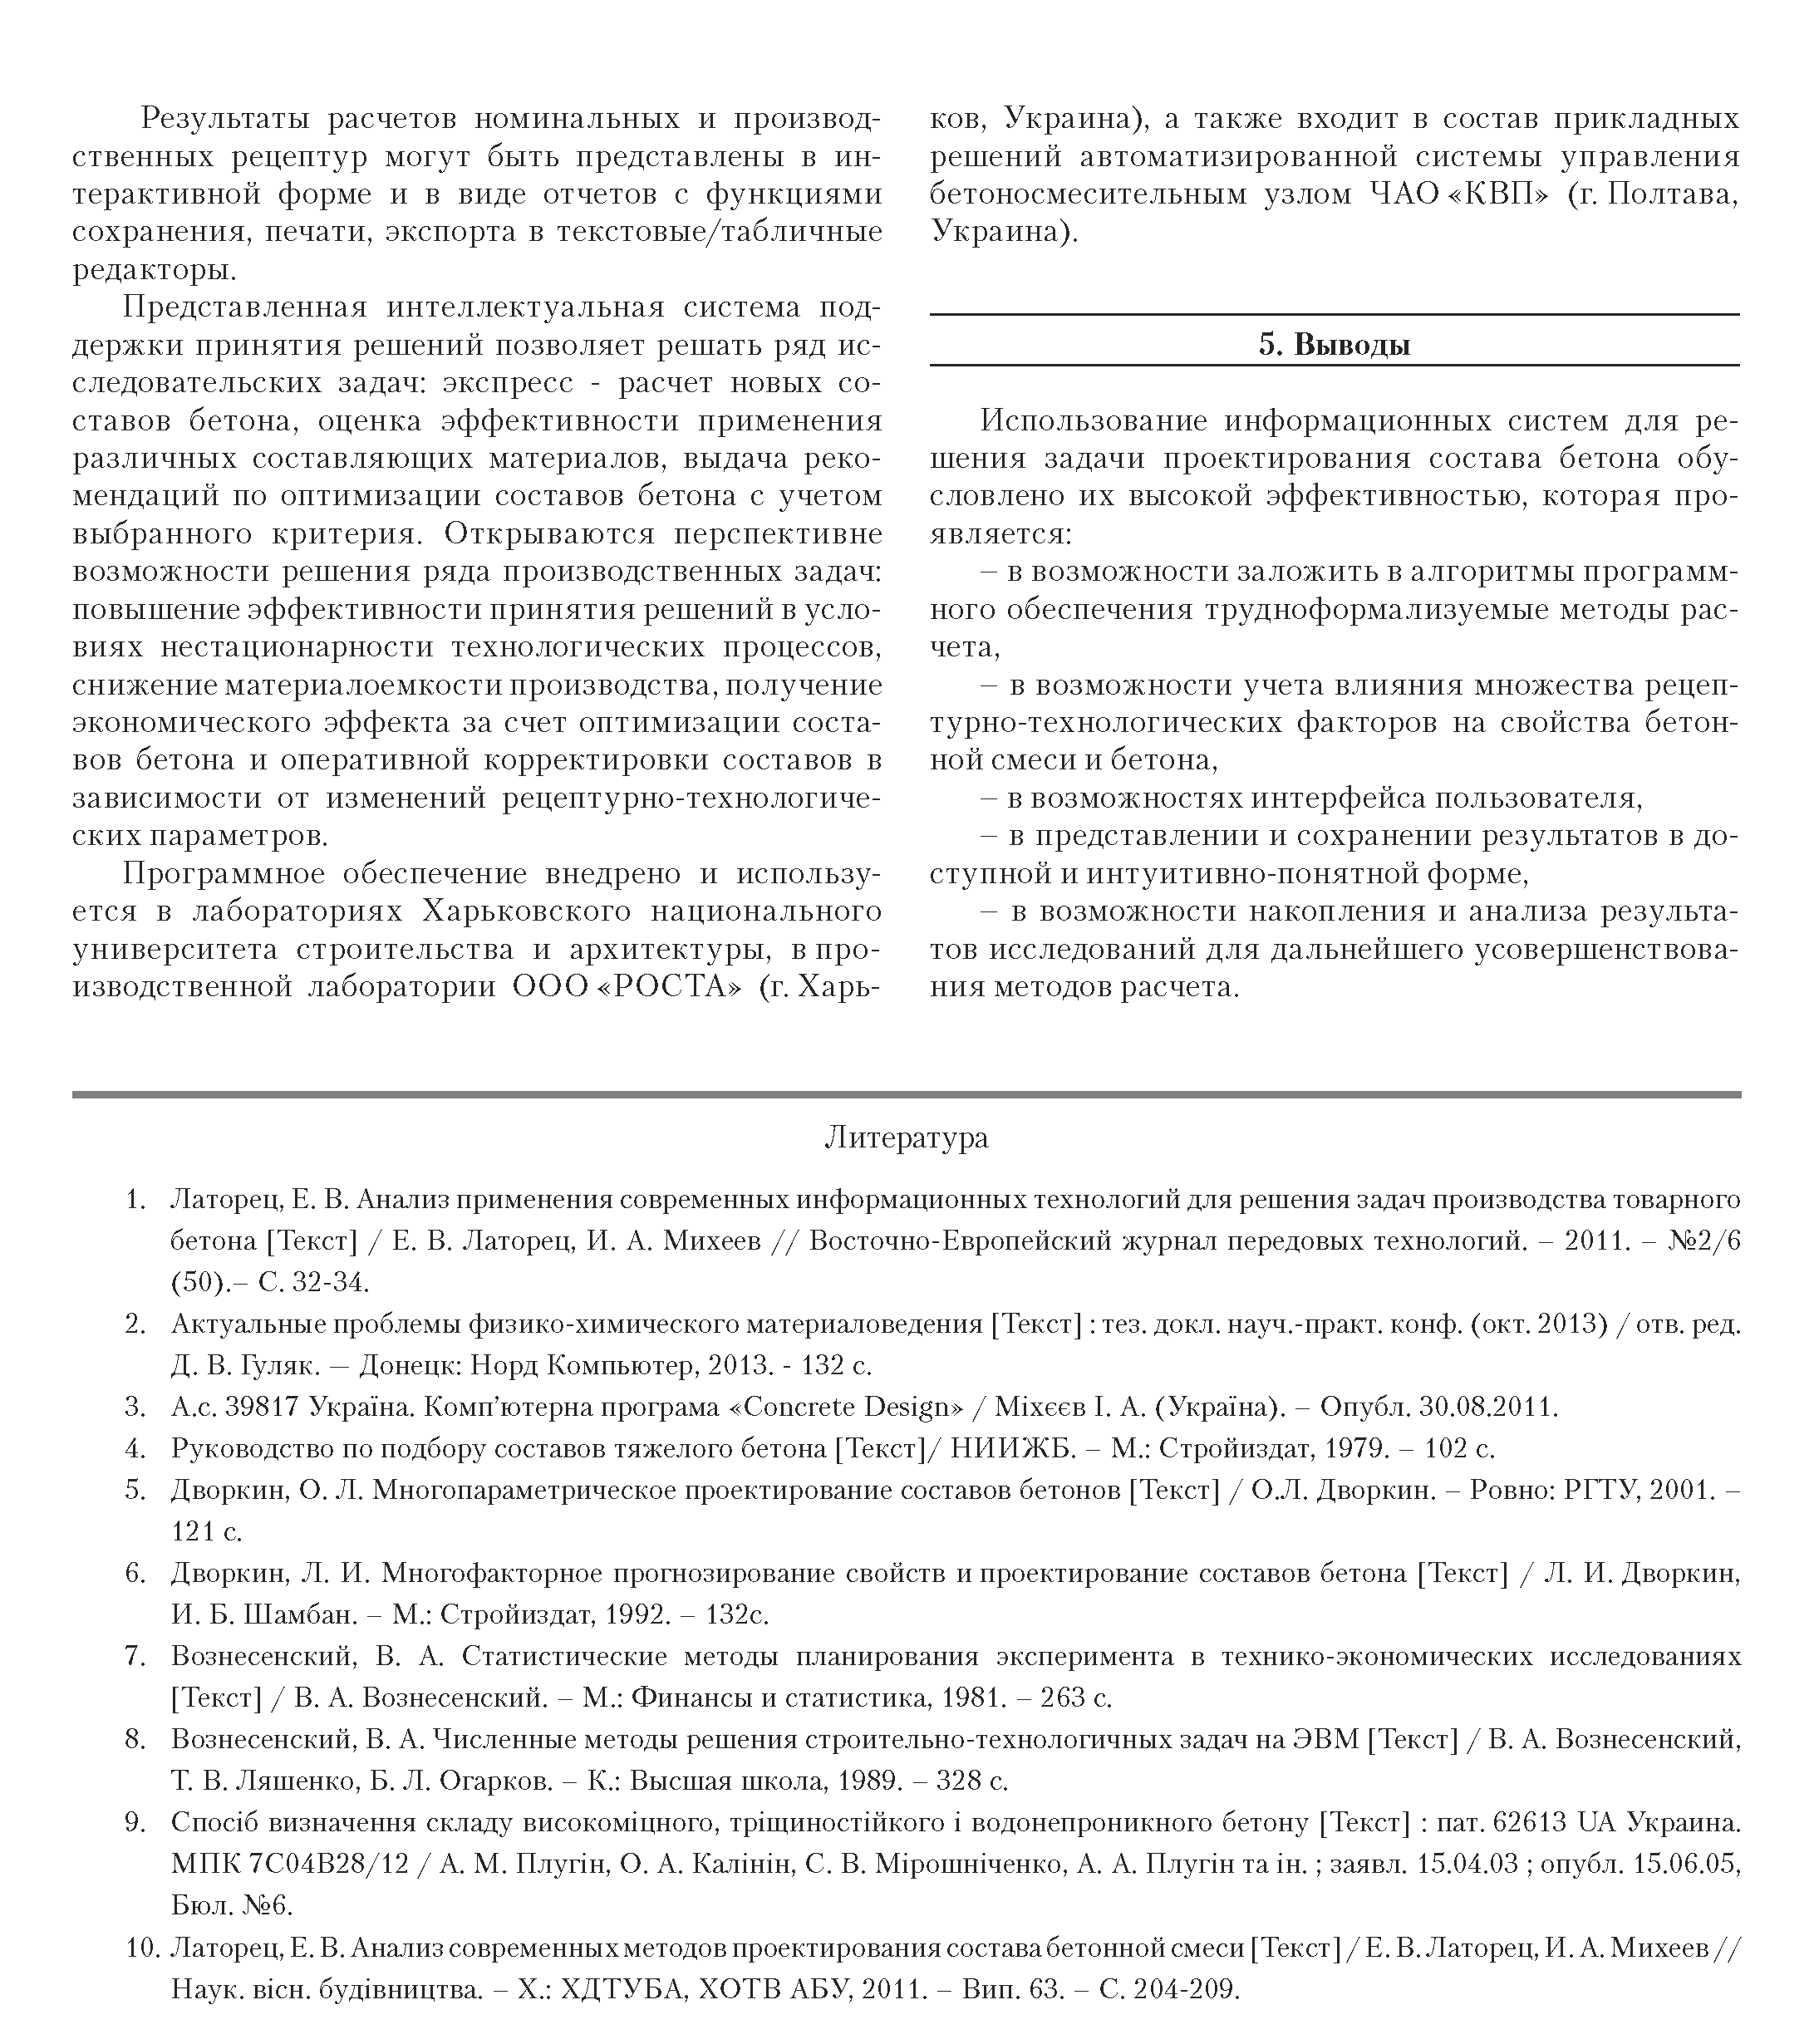 Особенности создания программного обеспечения для проектирования состава  бетона – Н. Д. Сизова, И. А. Михеев | elima.ru